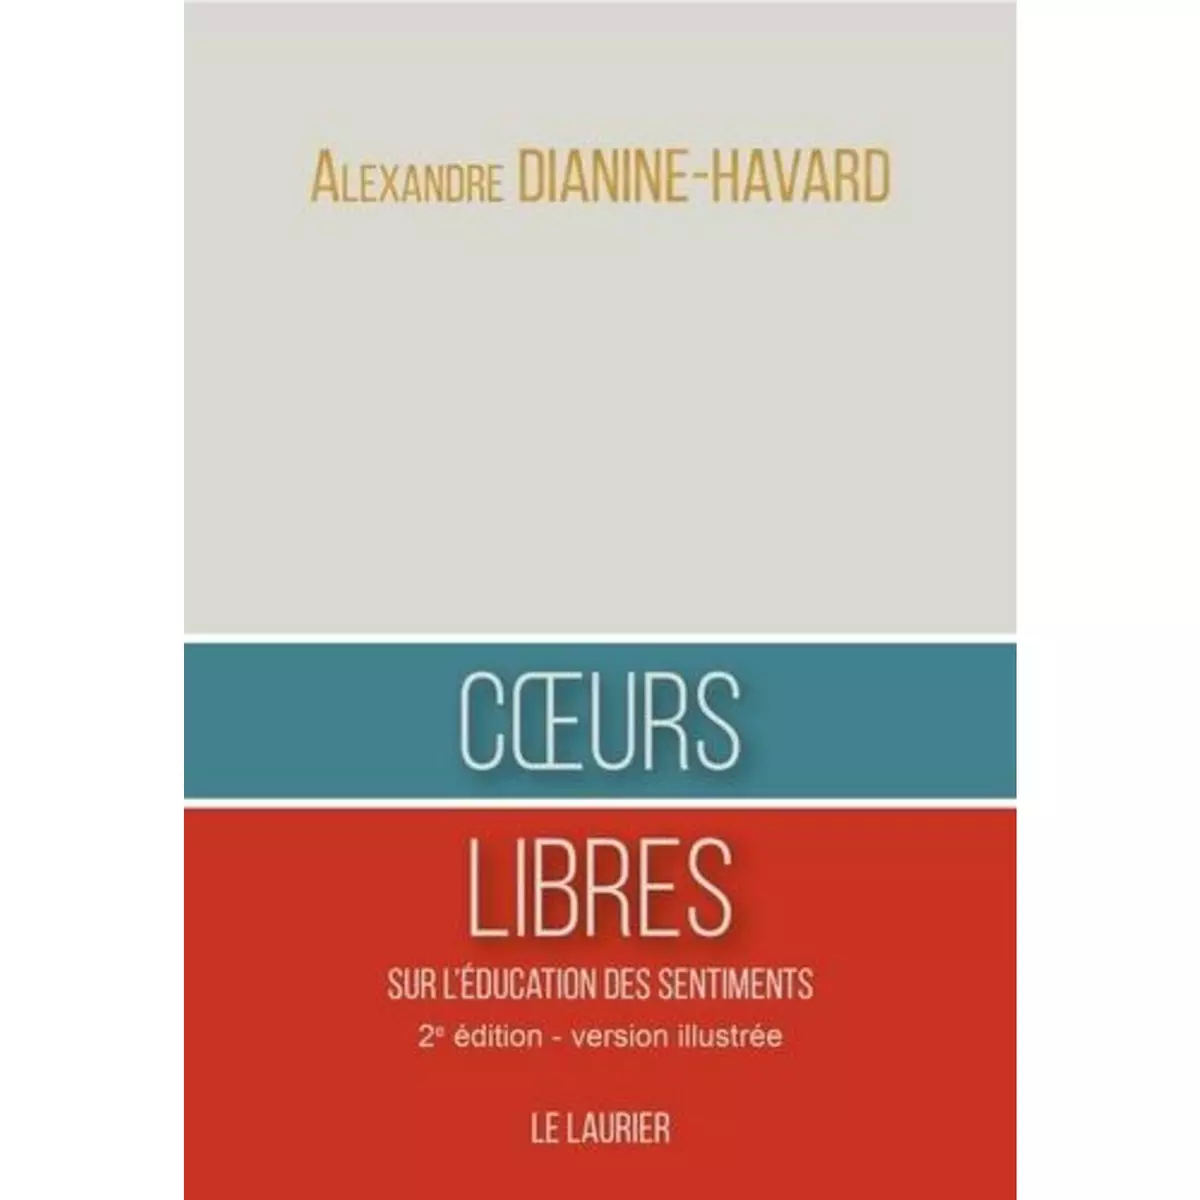  COEURS LIBRES. SUR L'EDUCATION DES SENTIMENTS, Dianine-Havard Alexandre